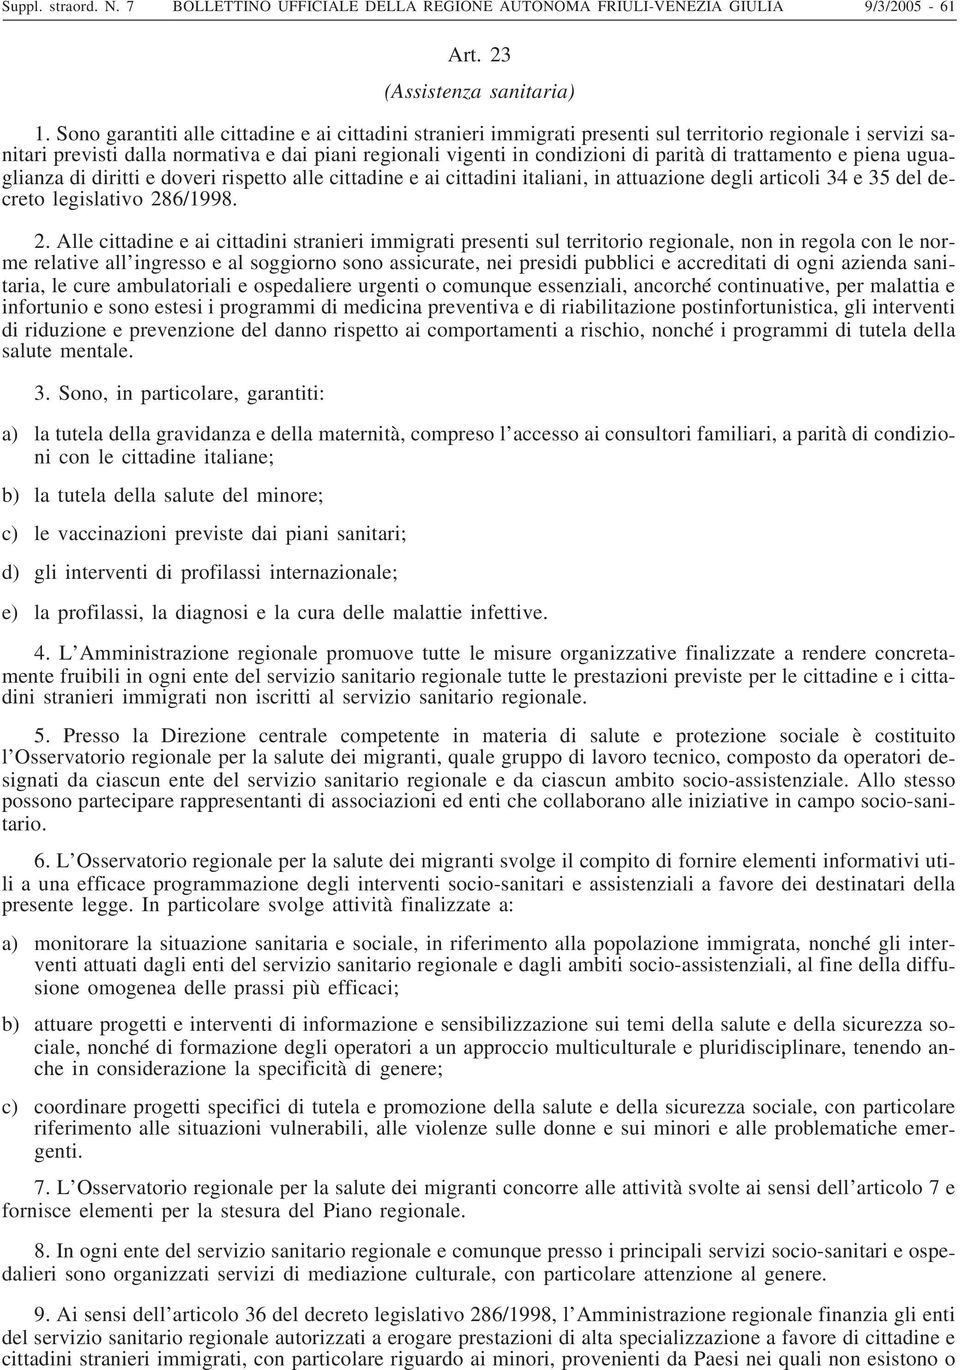 trattamento e piena uguaglianza di diritti e doveri rispetto alle cittadine e ai cittadini italiani, in attuazione degli articoli 34 e 35 del decreto legislativo 28